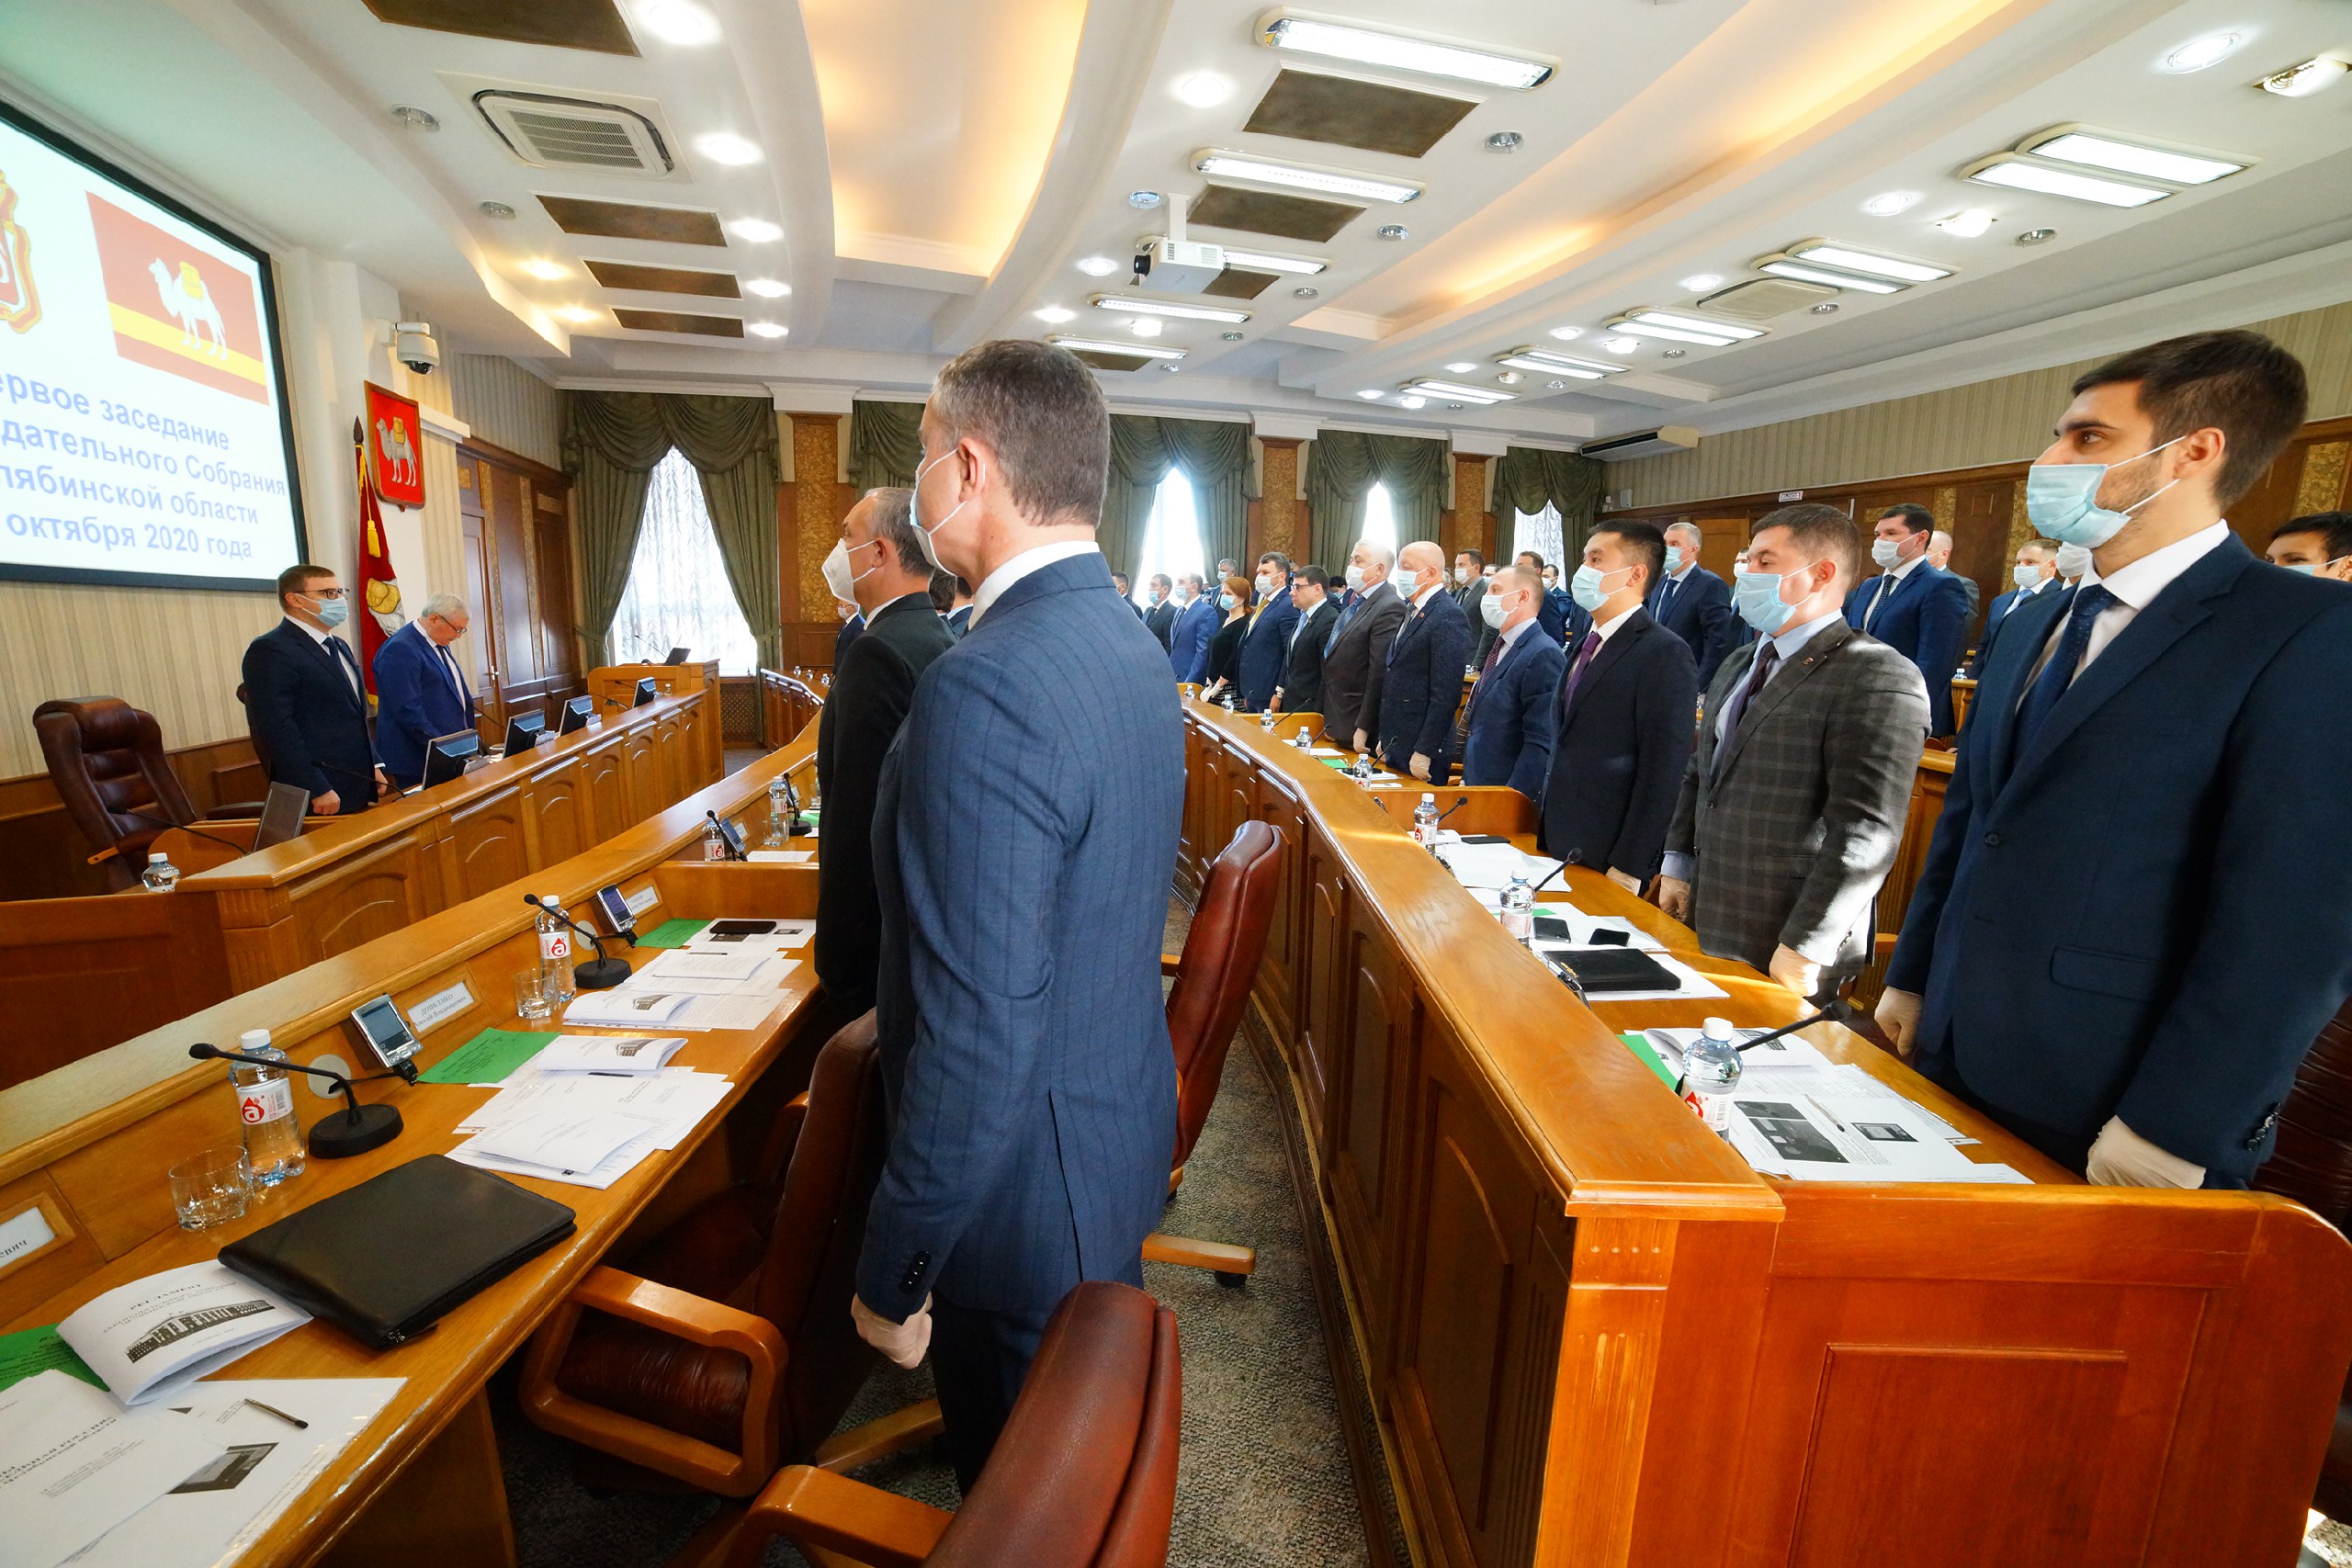 7 Созыв Законодательного собрания Челябинской области